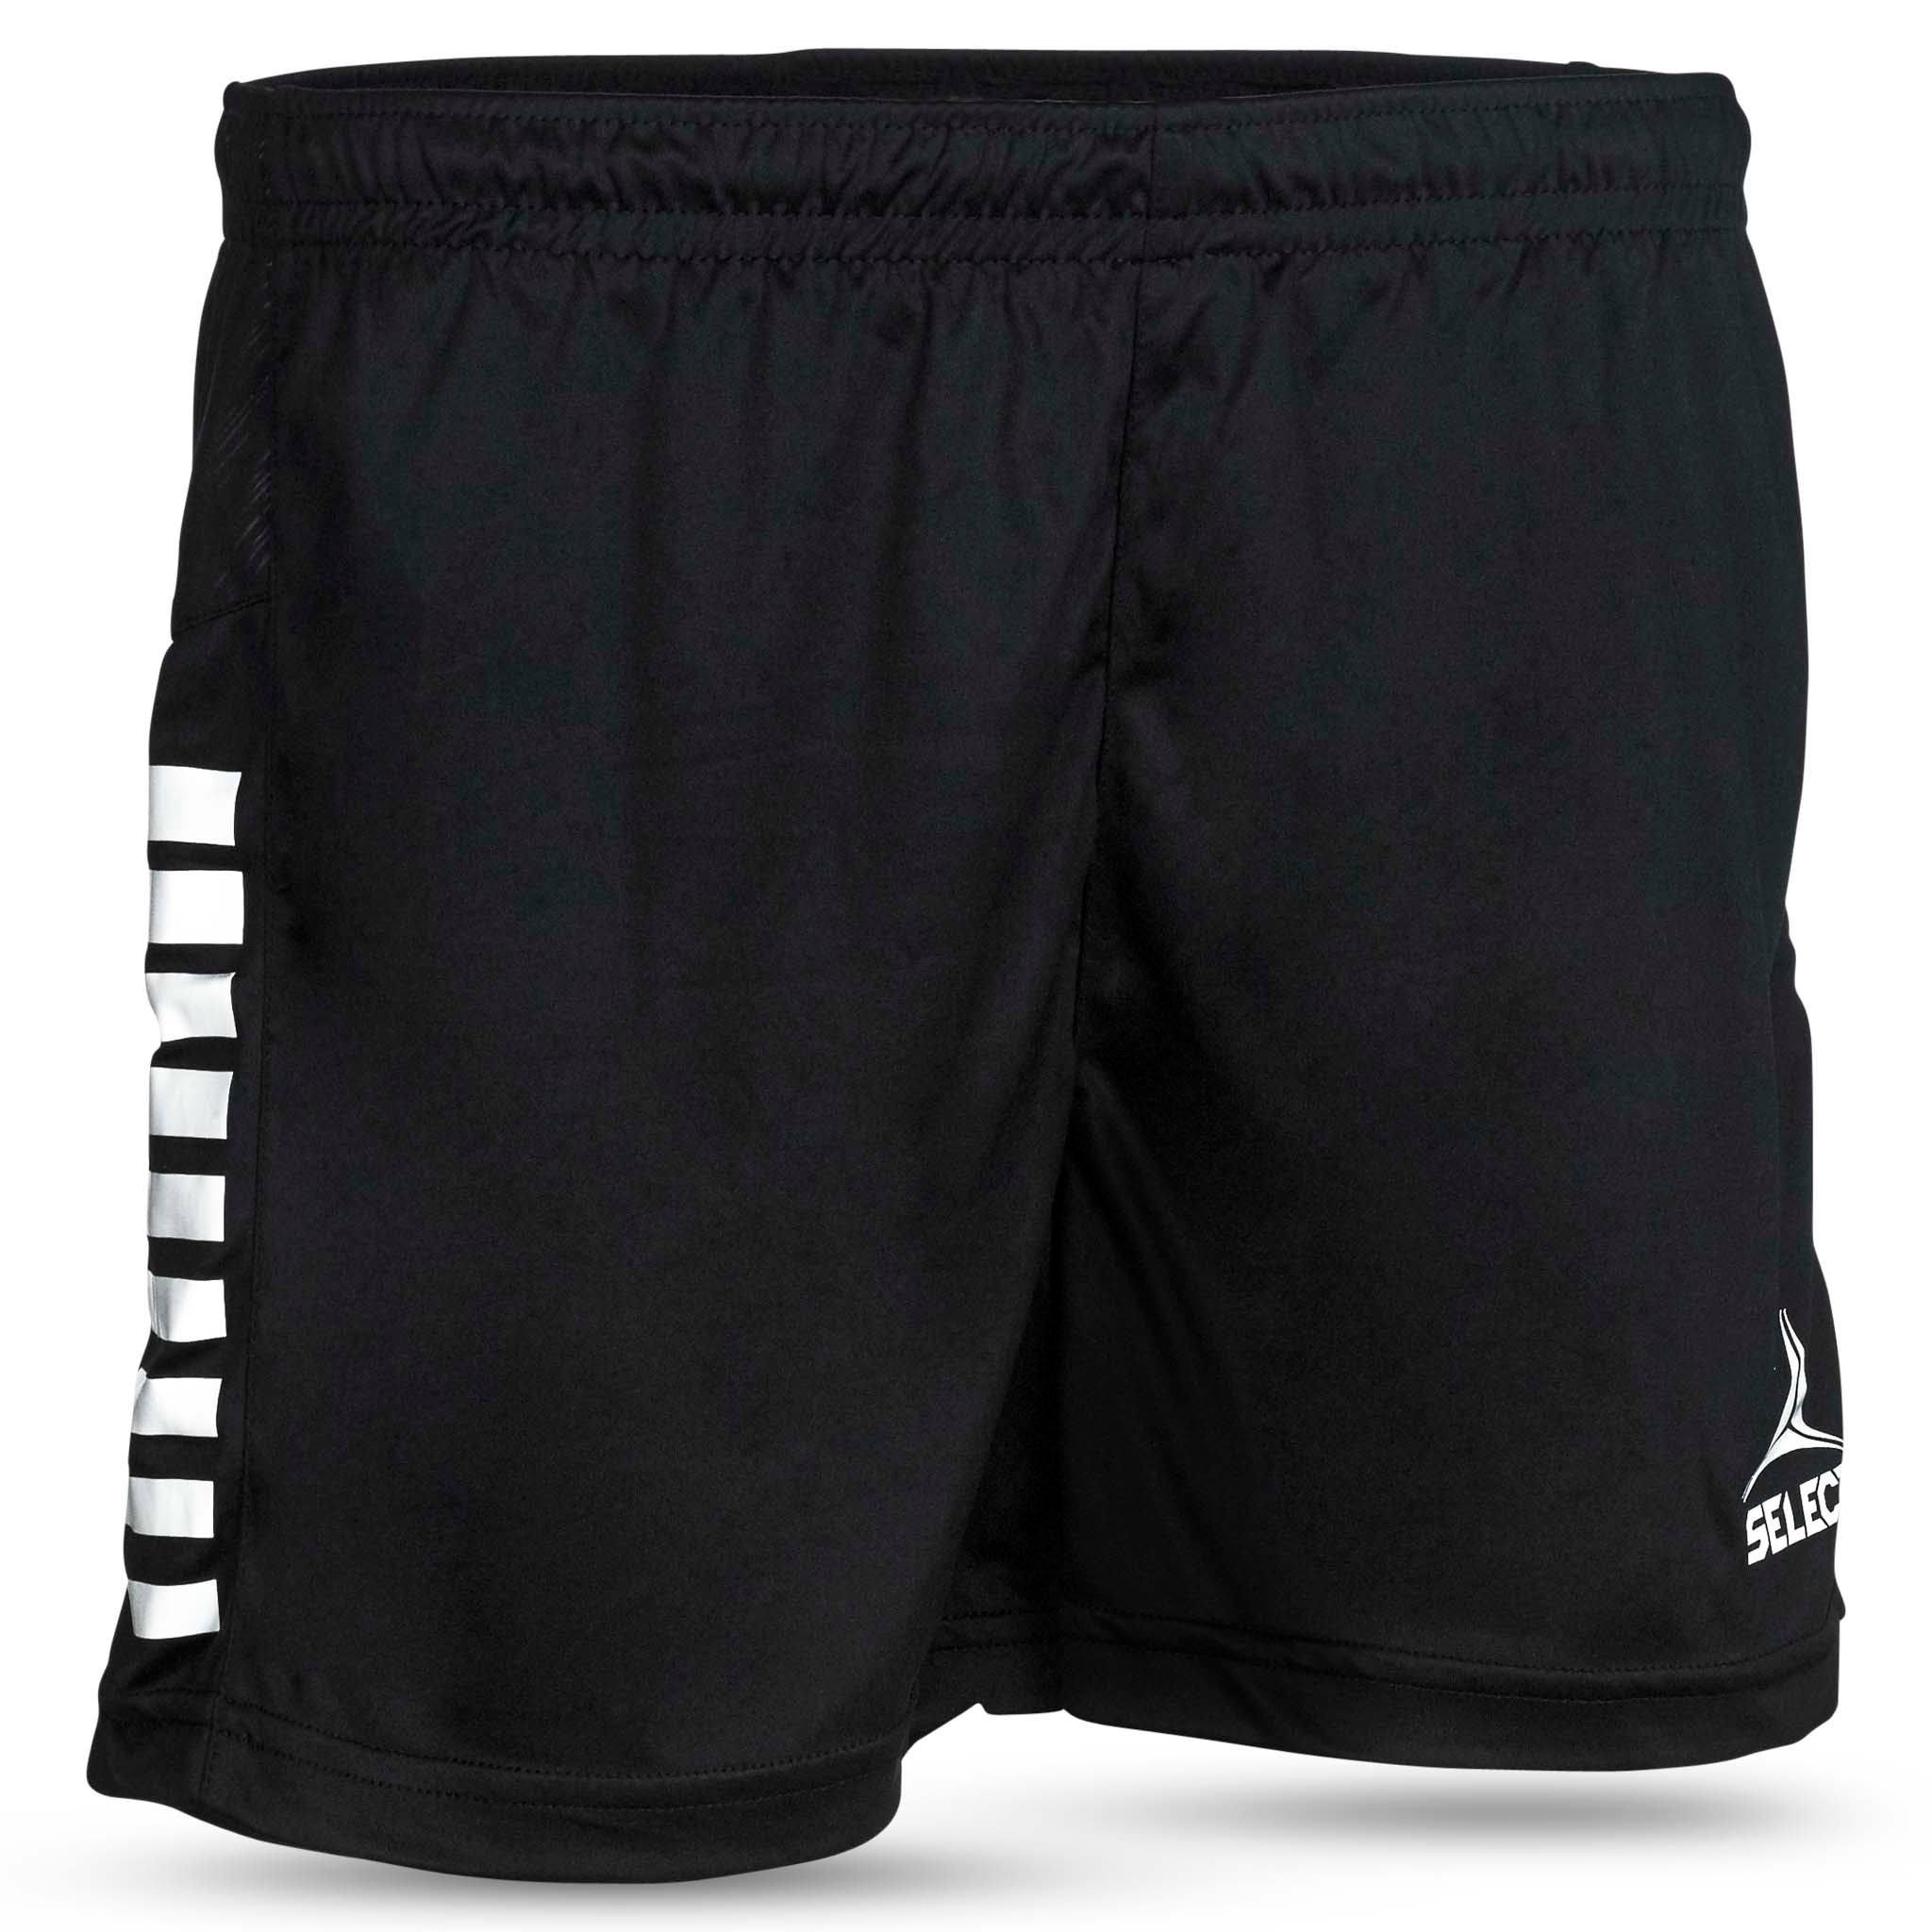 Spain Player shorts - women #colour_black